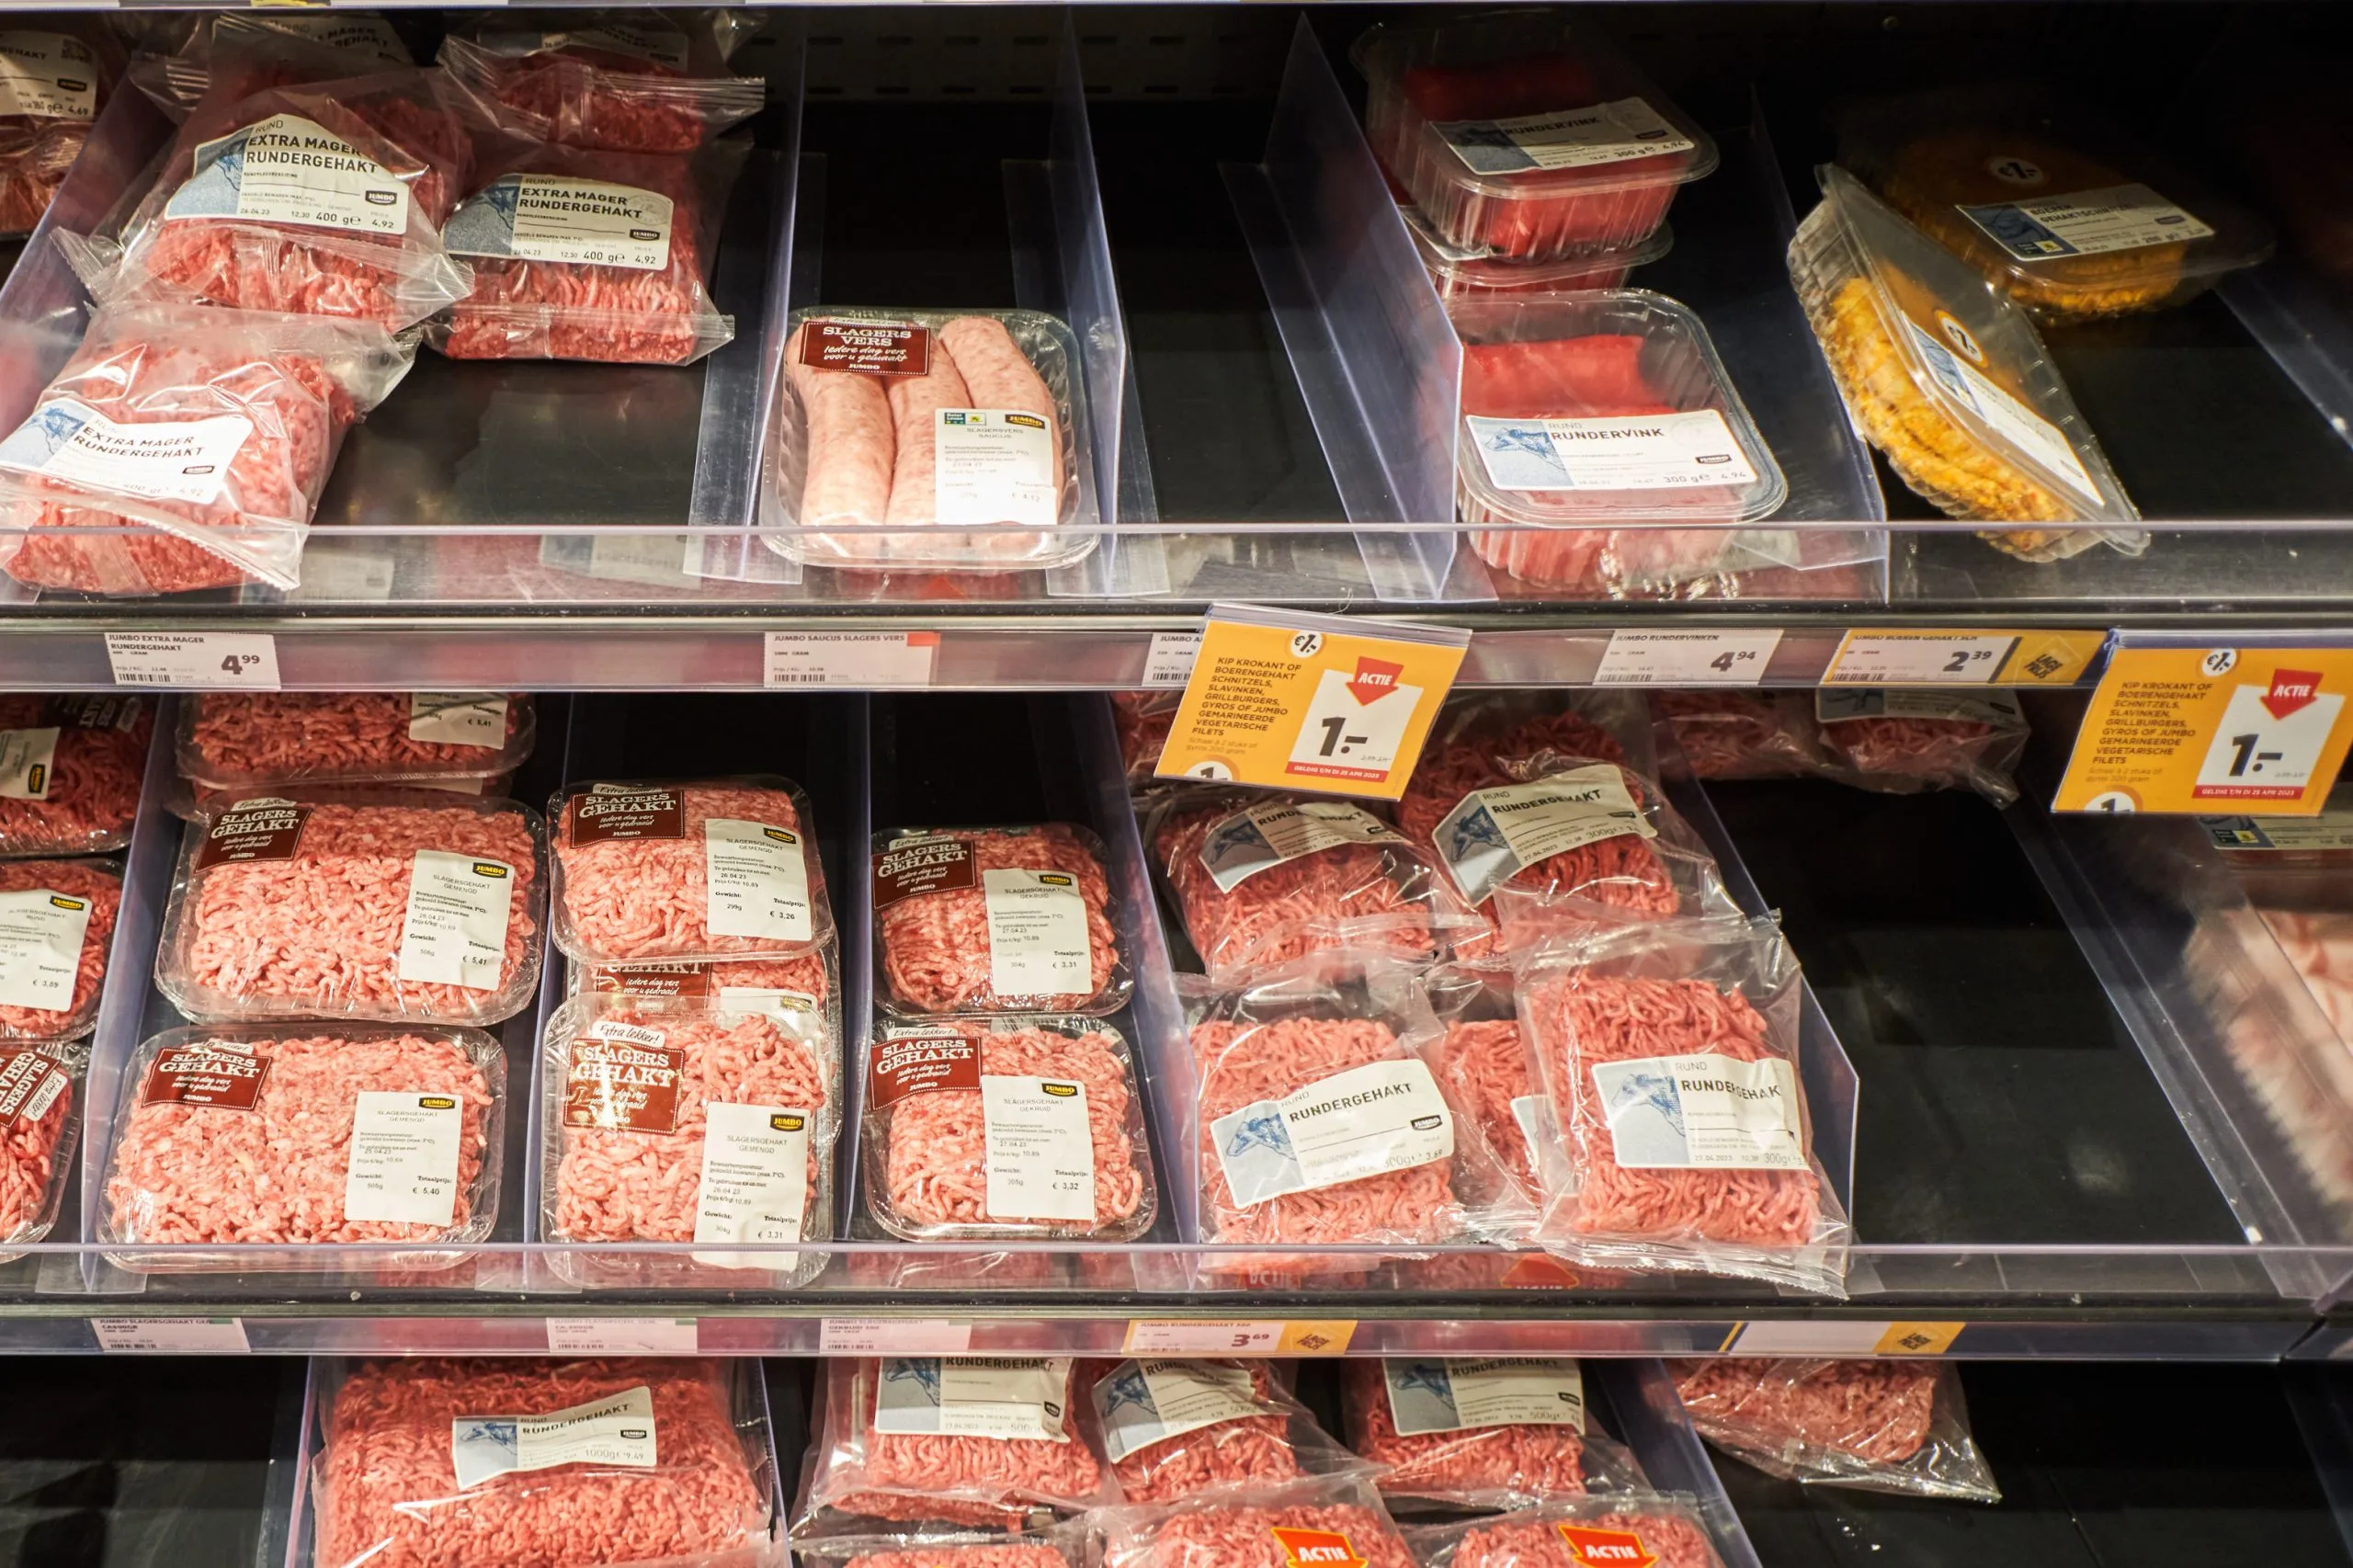 Beeld: supermarktschap met vlees